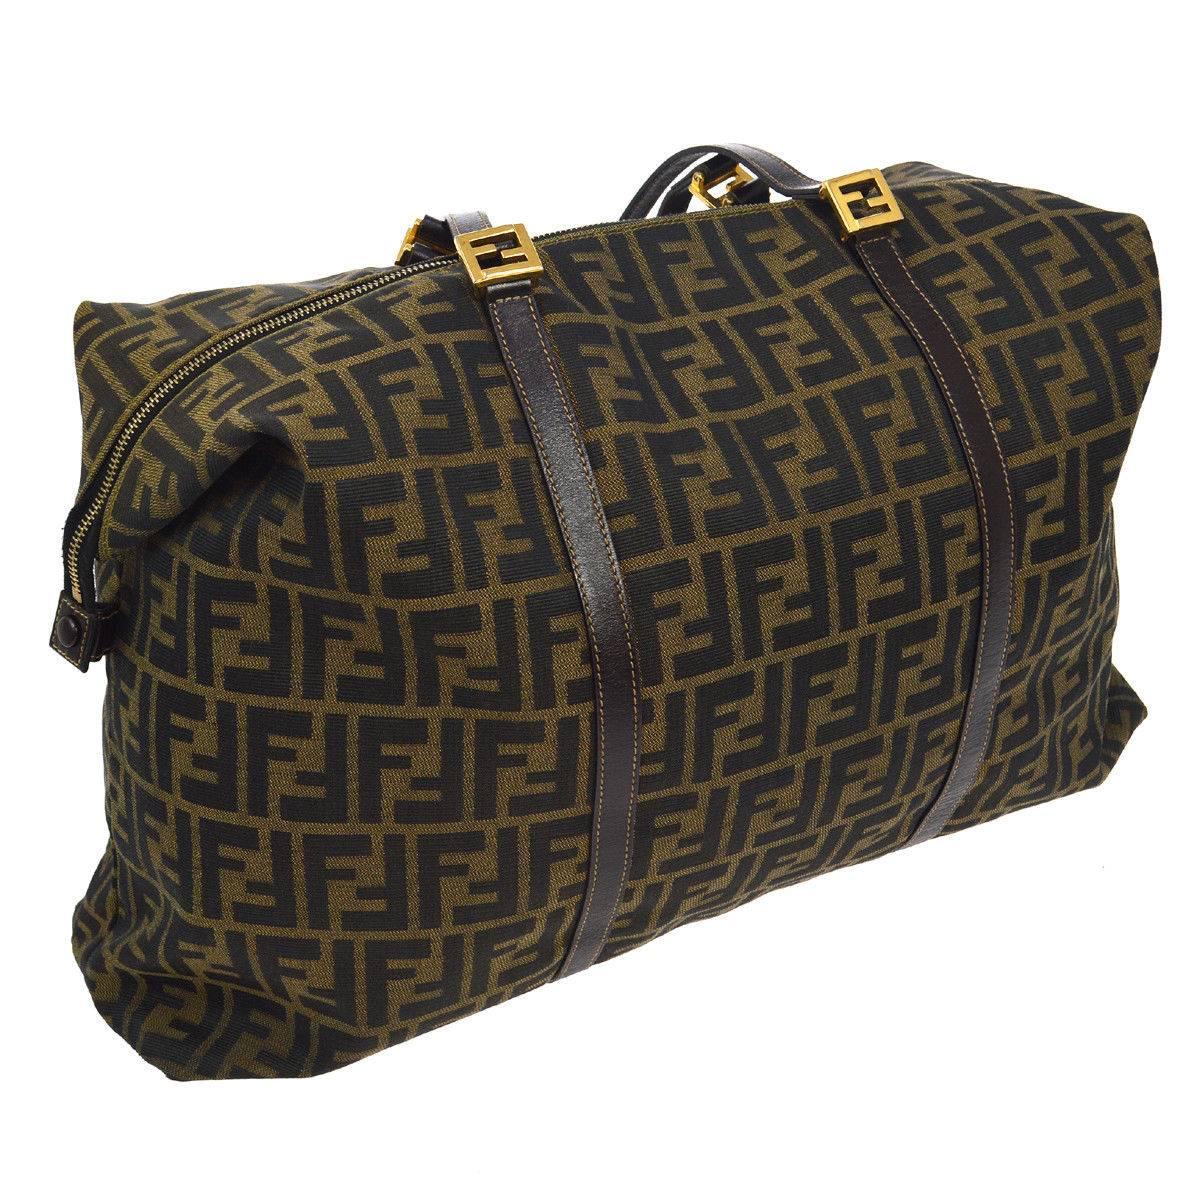 Fendi Monogram Logo Large Carryall Travel Weekender Shoulder Tote Bag